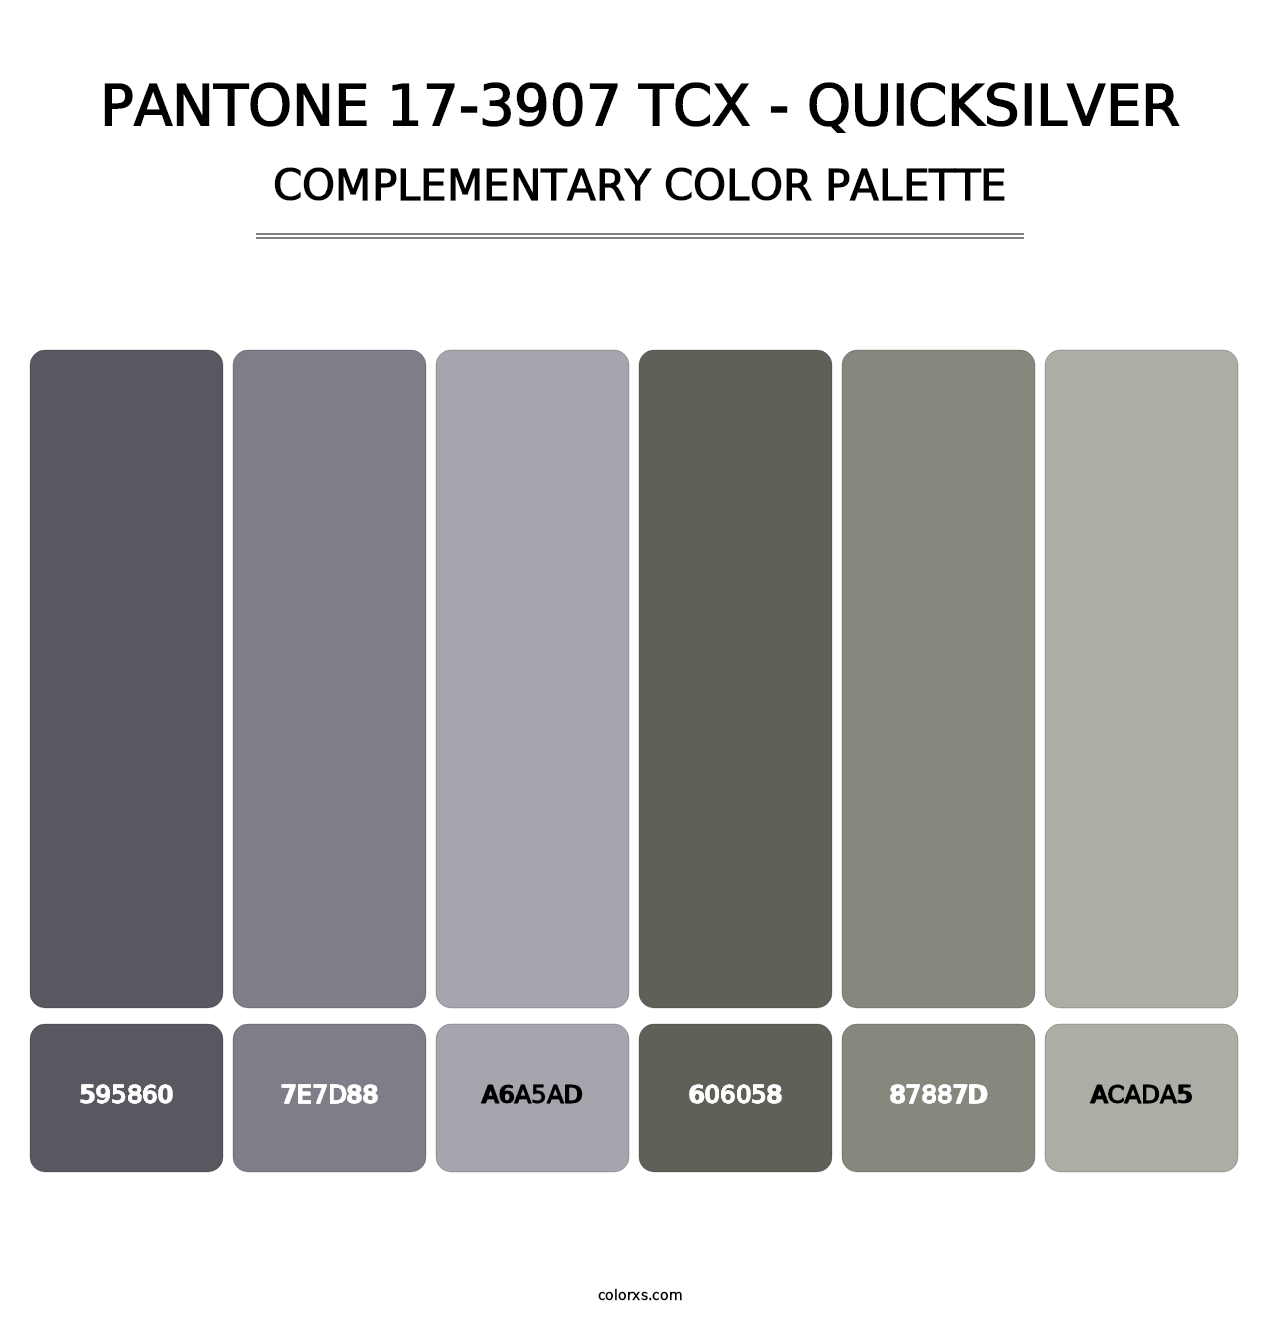 PANTONE 17-3907 TCX - Quicksilver - Complementary Color Palette